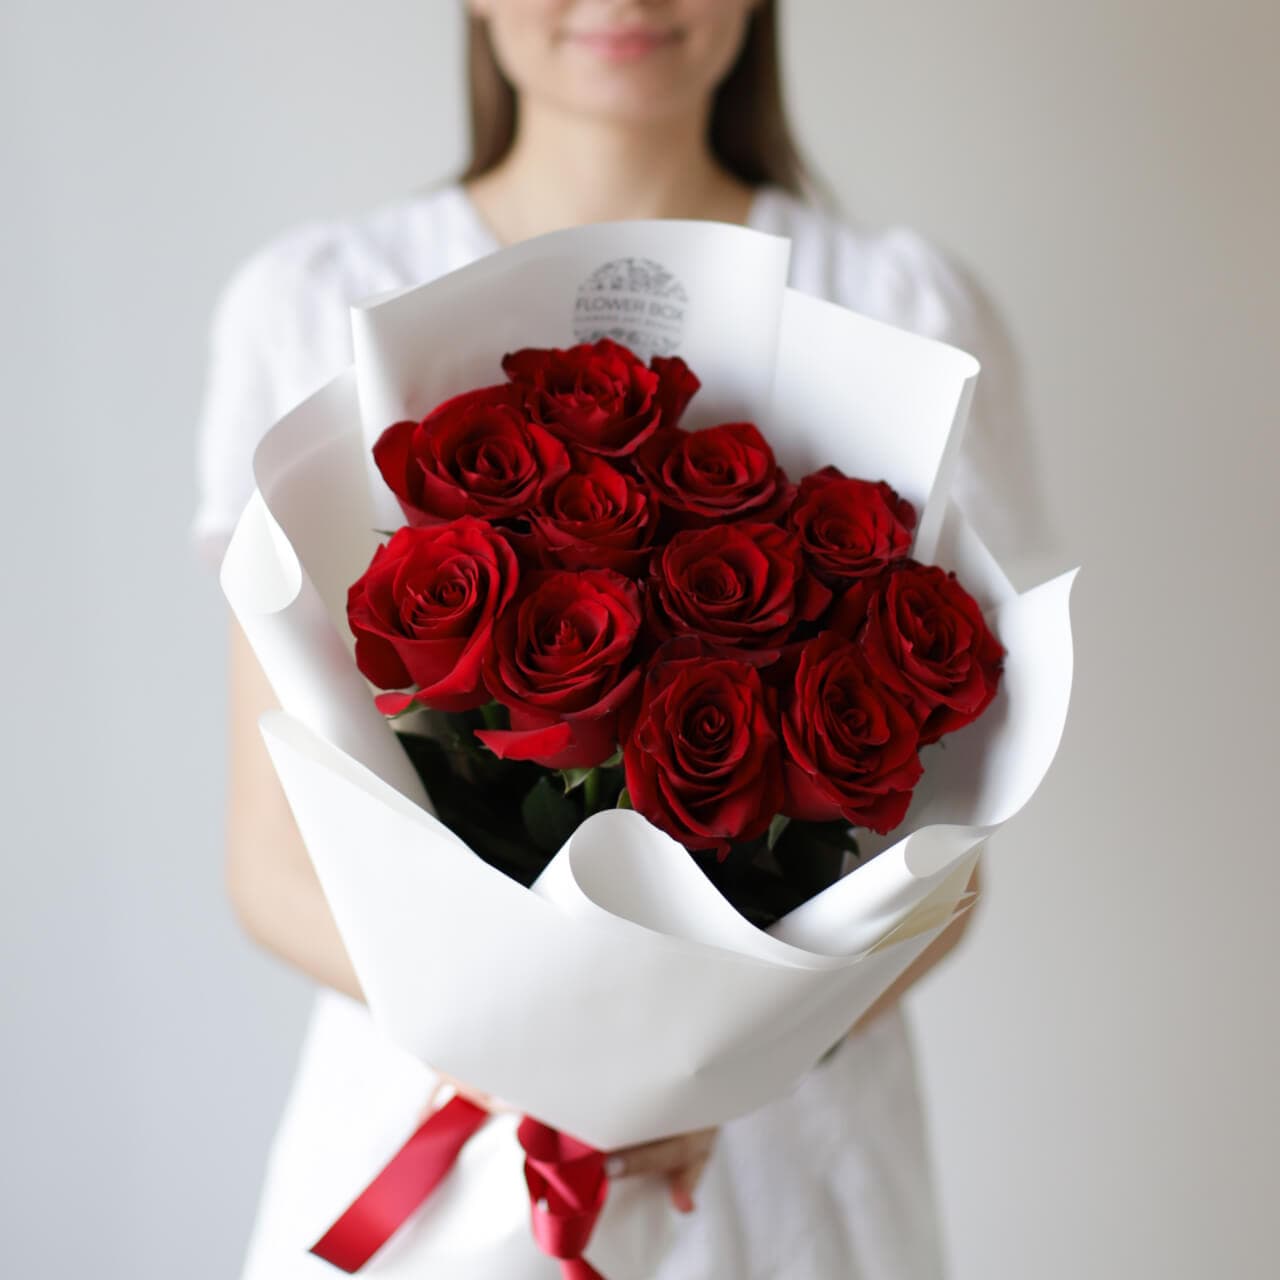 Красные розы в белом оформлении (11 шт) №719 - Фото 1